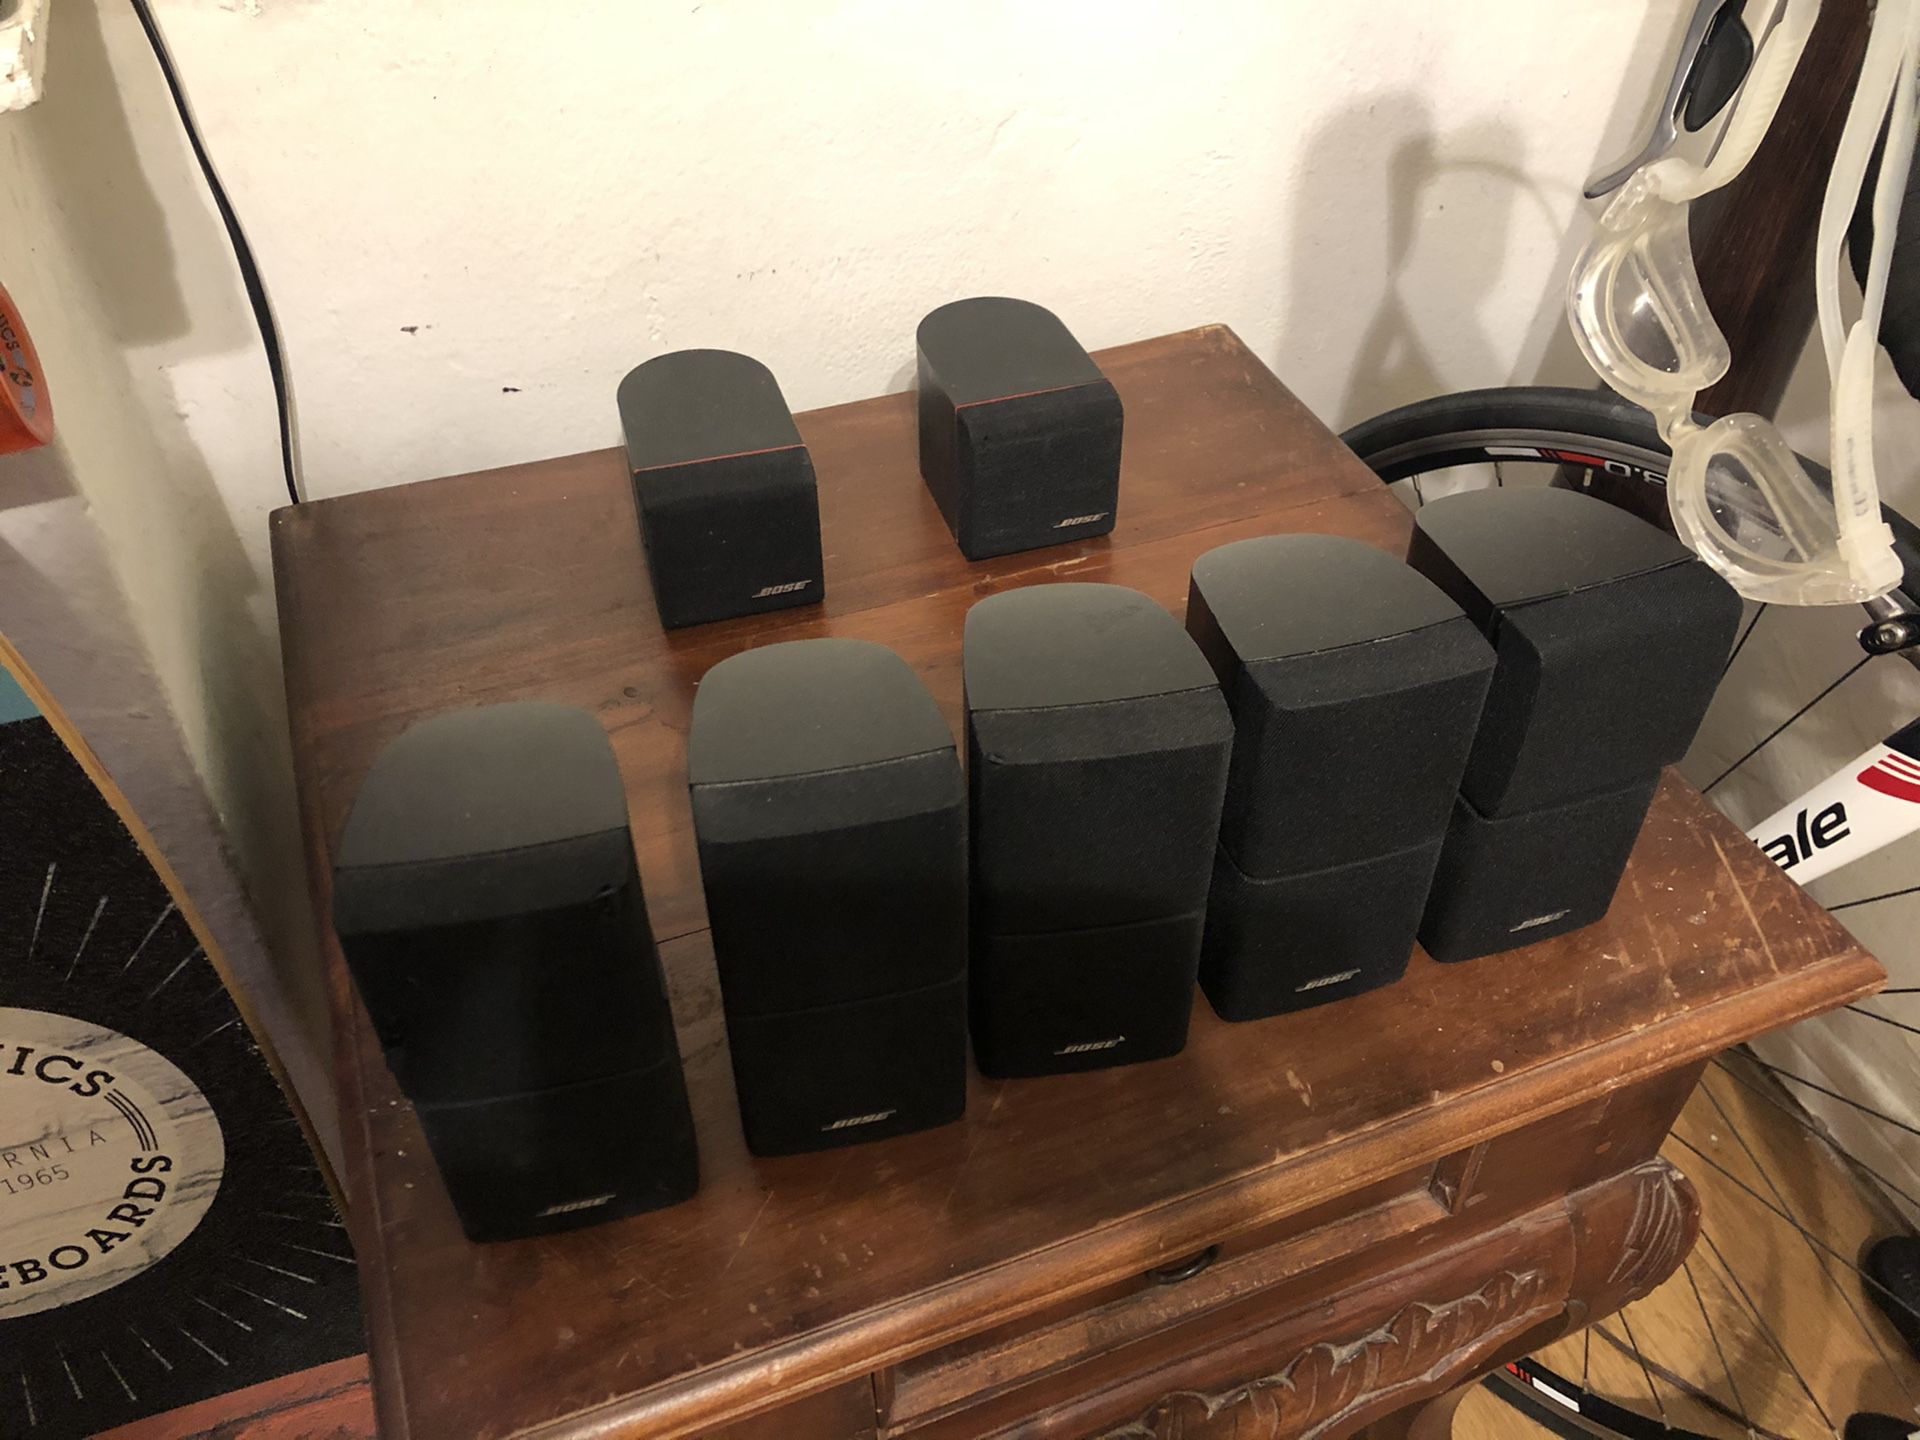 Bose sorround sound speaker’s